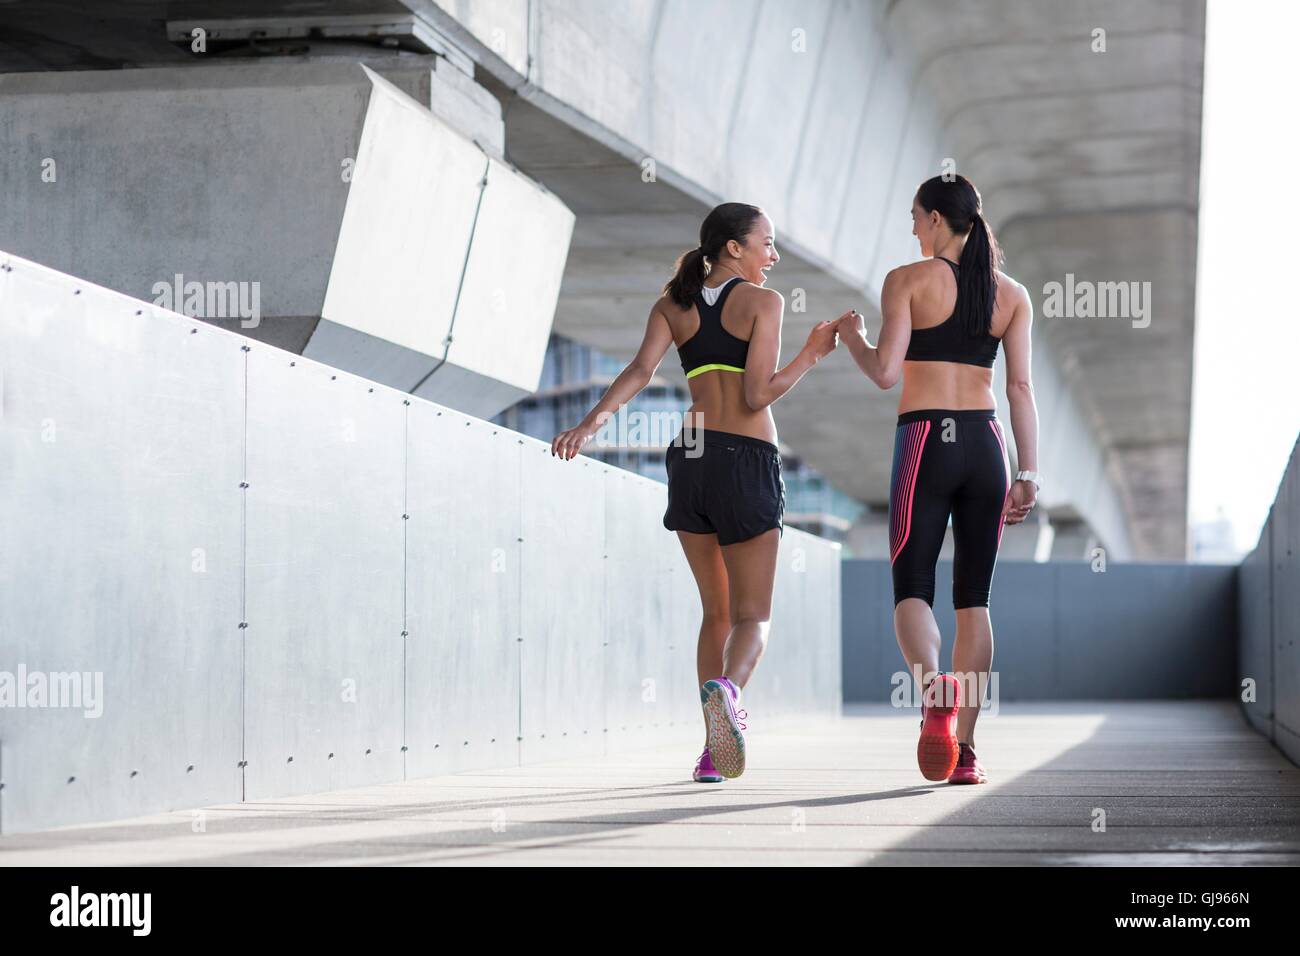 MODEL RELEASED. Two young women wearing sports wear in urban scene. Stock Photo